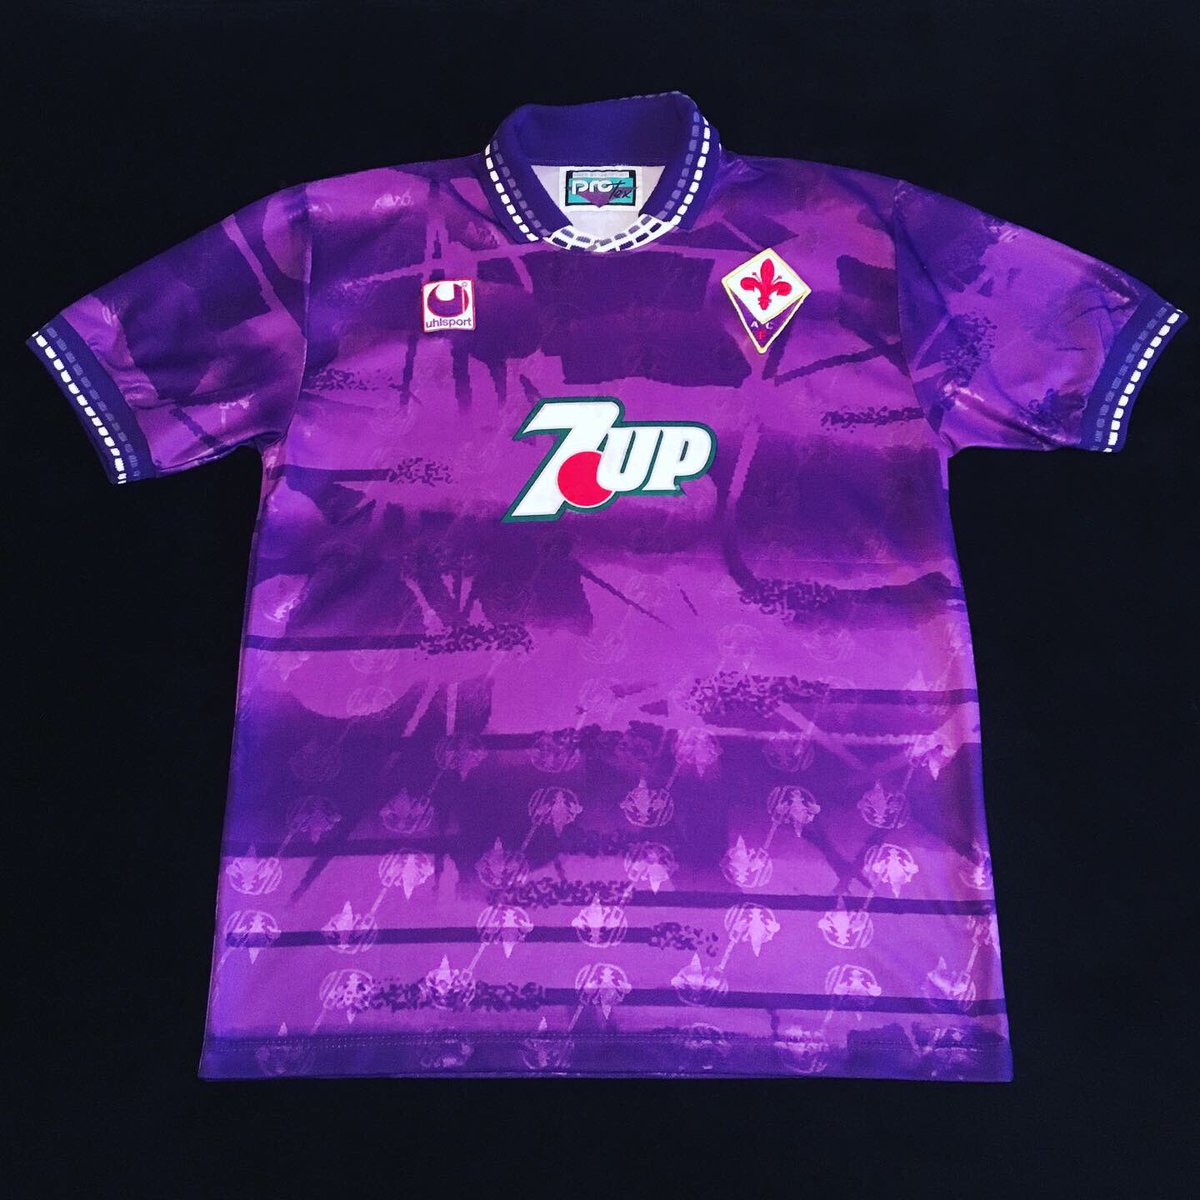 Uhlsport Maglia Calcio Vintage Uhlsport Fiorentina home 7up 1993/94 rara # 9 Batistuta 